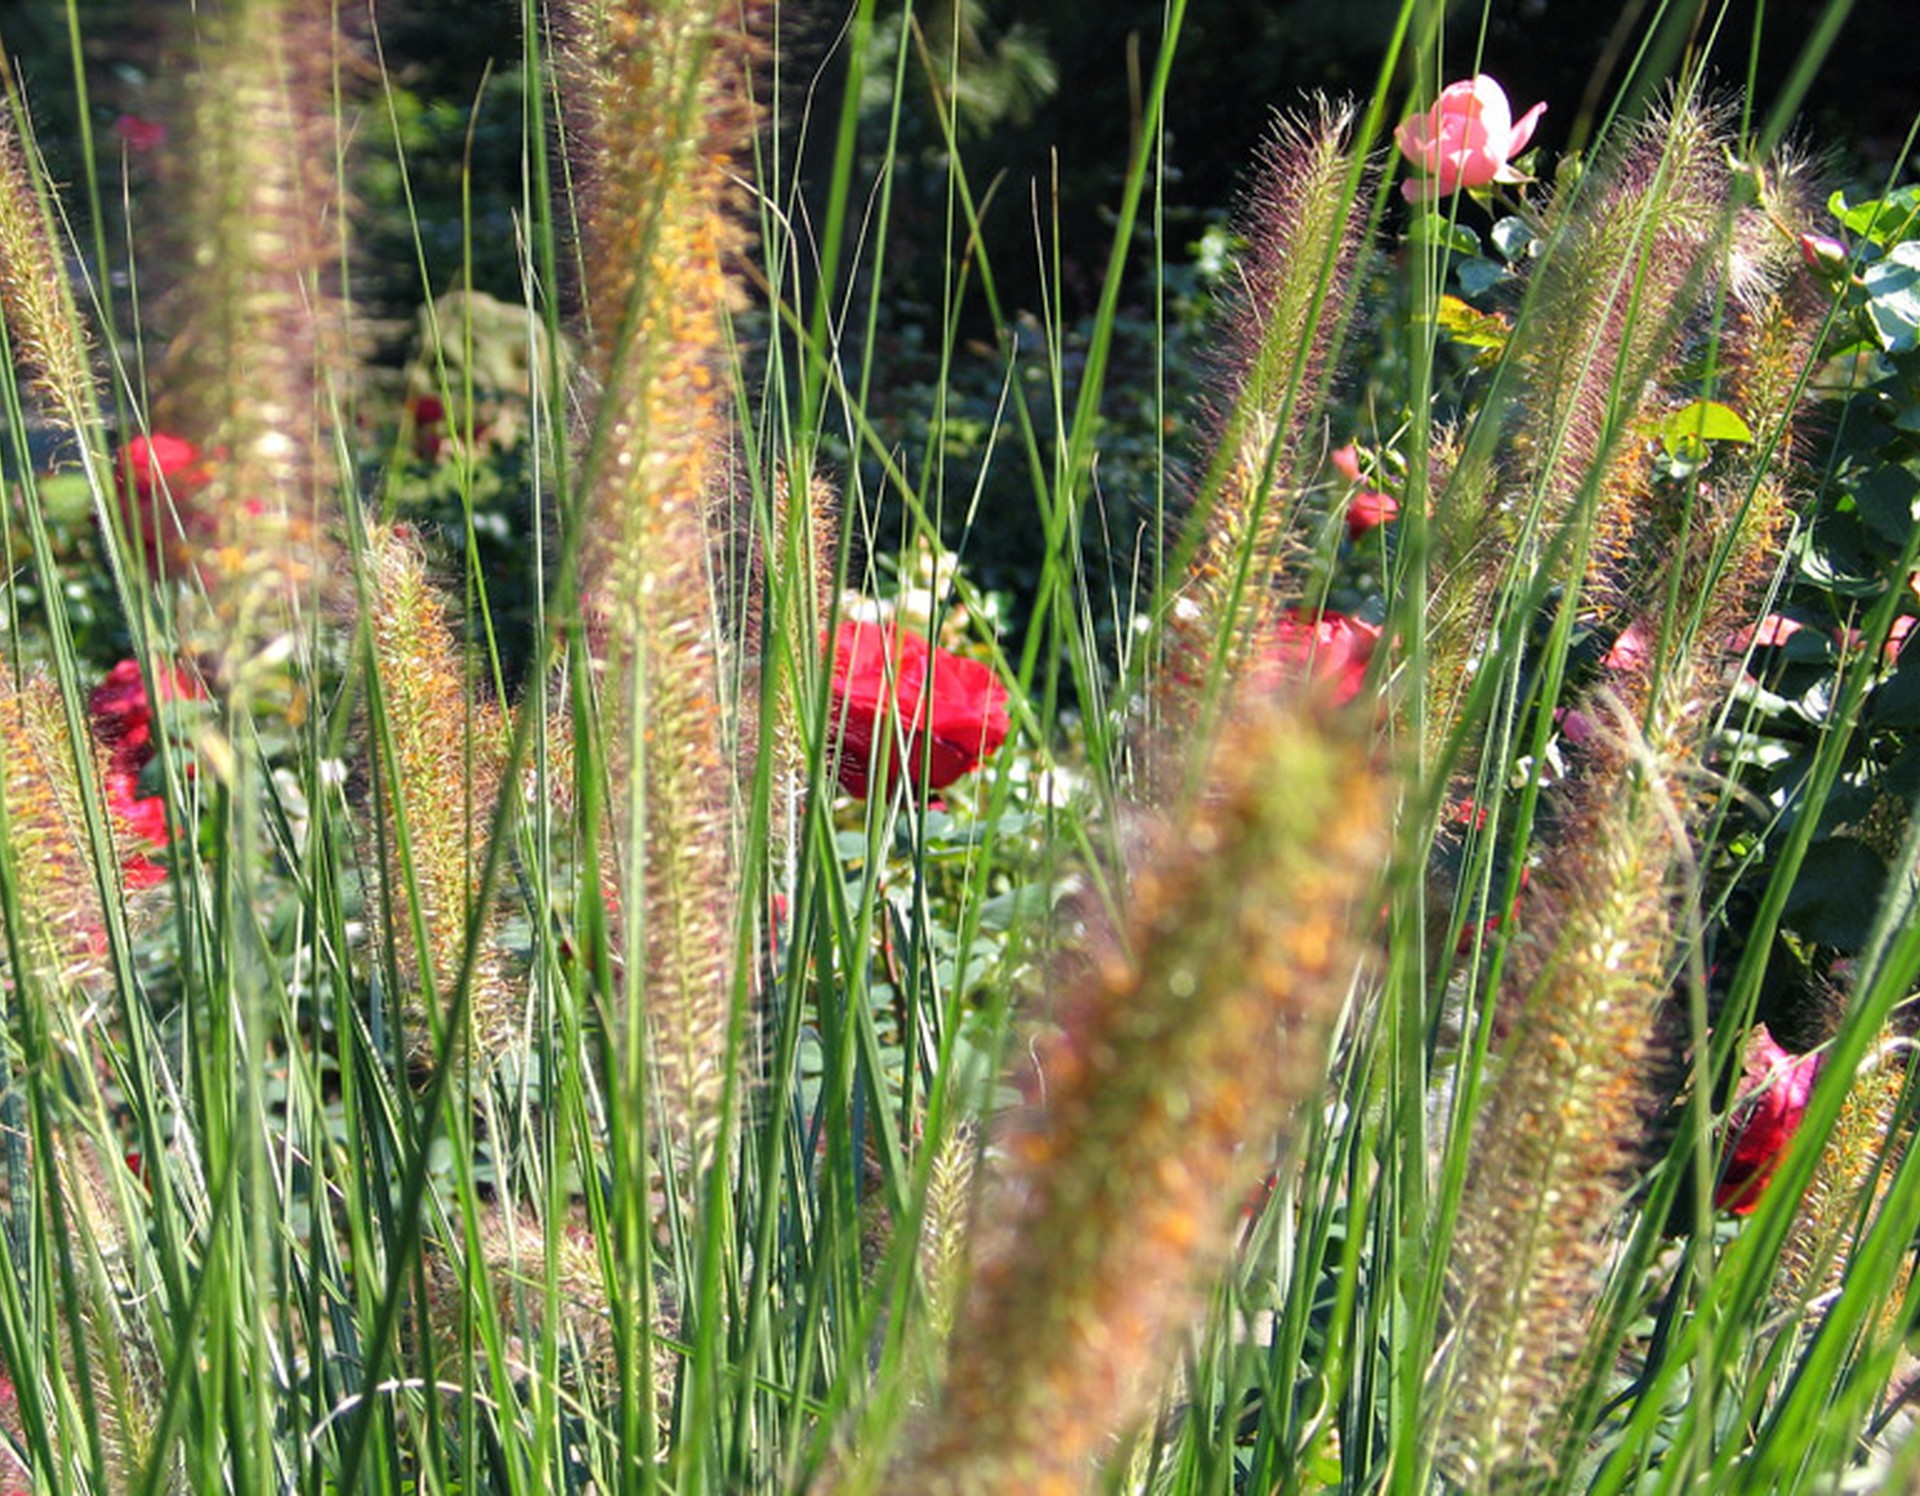 Einige Gräser in Großaufnahme. Im Hintergrund erkennt man einige rote und rosa Rosen.